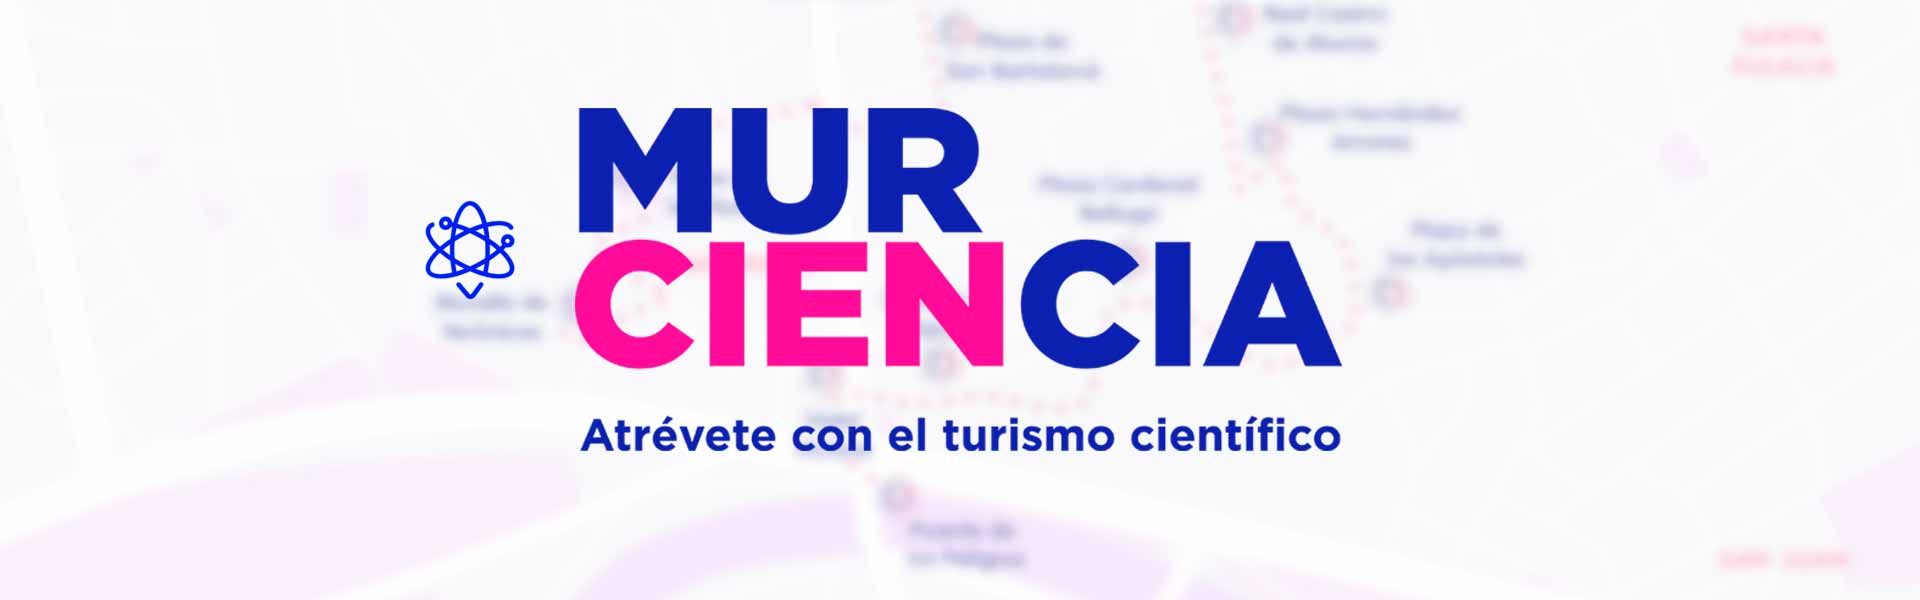 MurCIENCIA rutas cientificas. Turismo cientifico - Itinerarios Turísticos - Turismo de Murcia